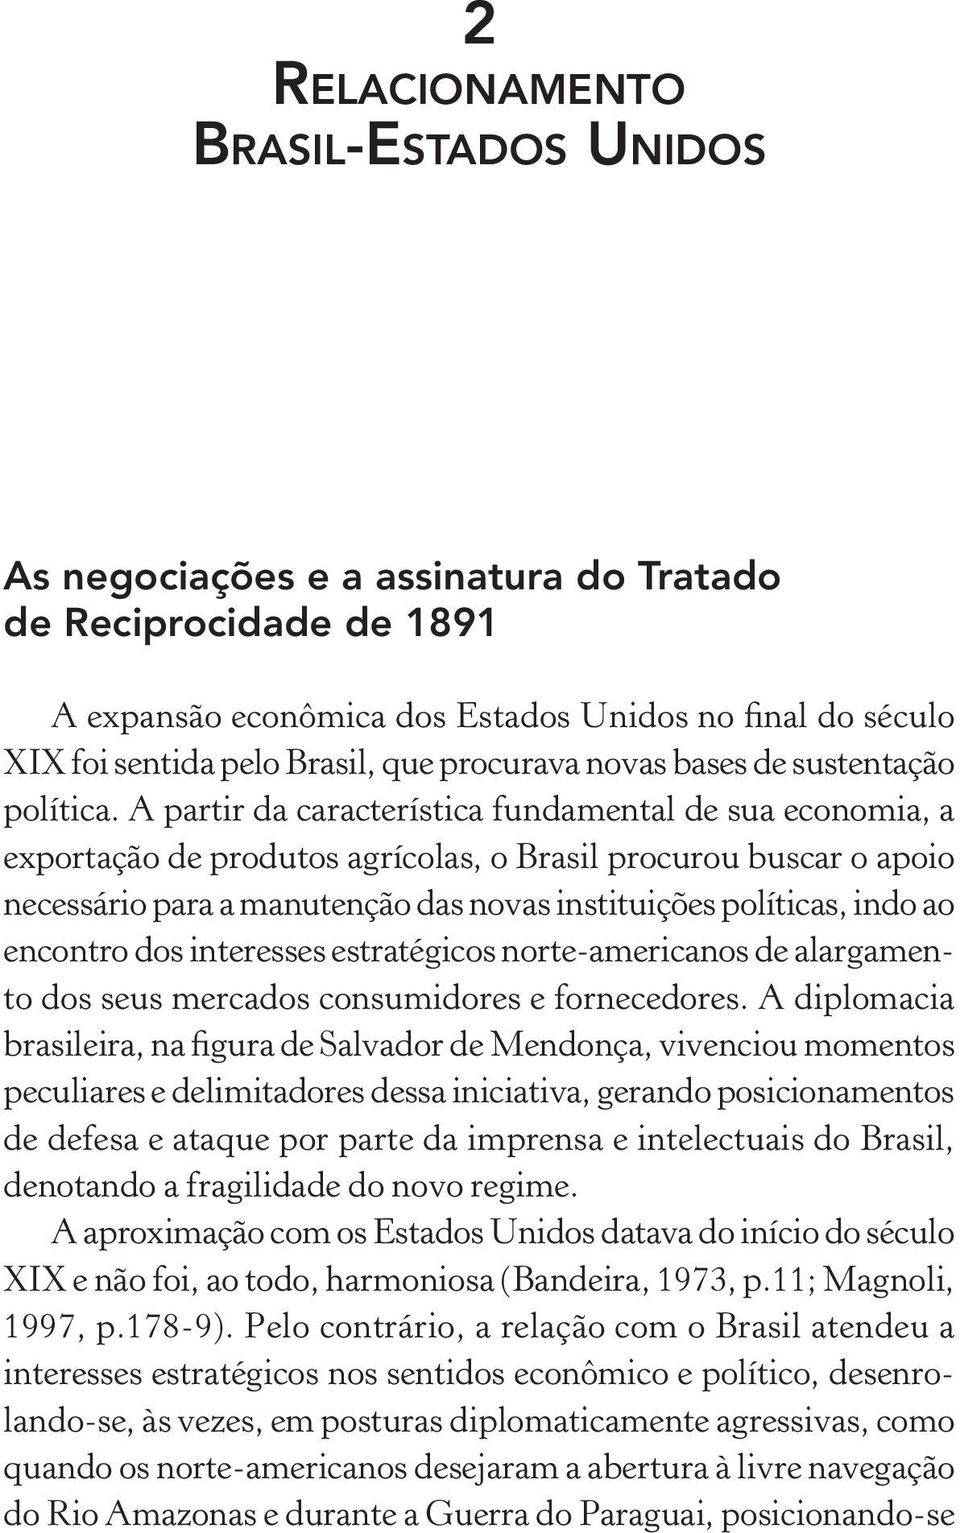 A partir da característica fundamental de sua economia, a exportação de produtos agrícolas, o Brasil procurou buscar o apoio necessário para a manutenção das novas instituições políticas, indo ao